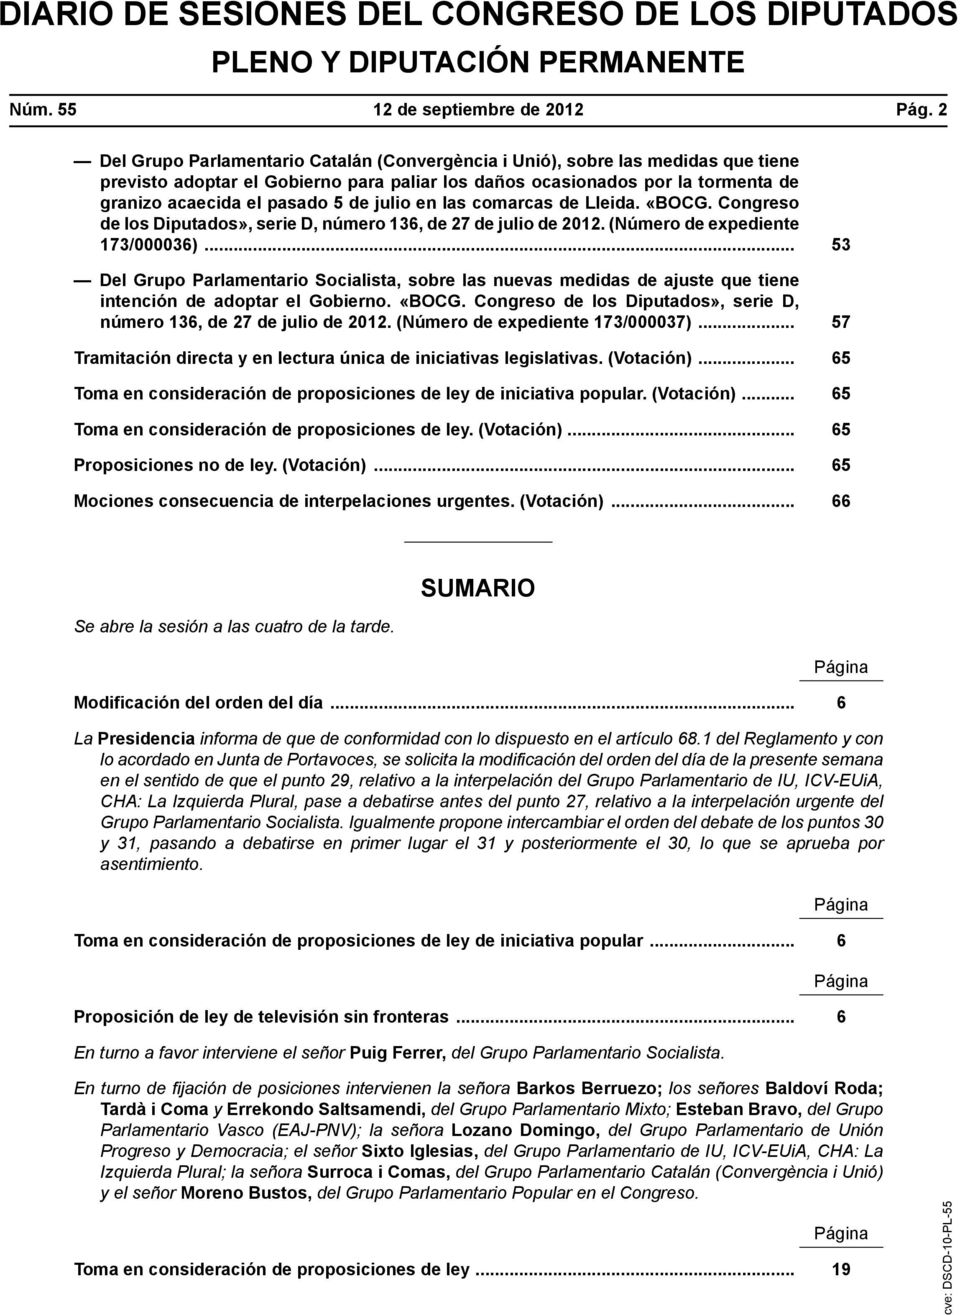 julio en las comarcas de Lleida. «BOCG. Congreso de los Diputados», serie D, número 136, de 27 de julio de 2012. (Número de expediente 173/000036).